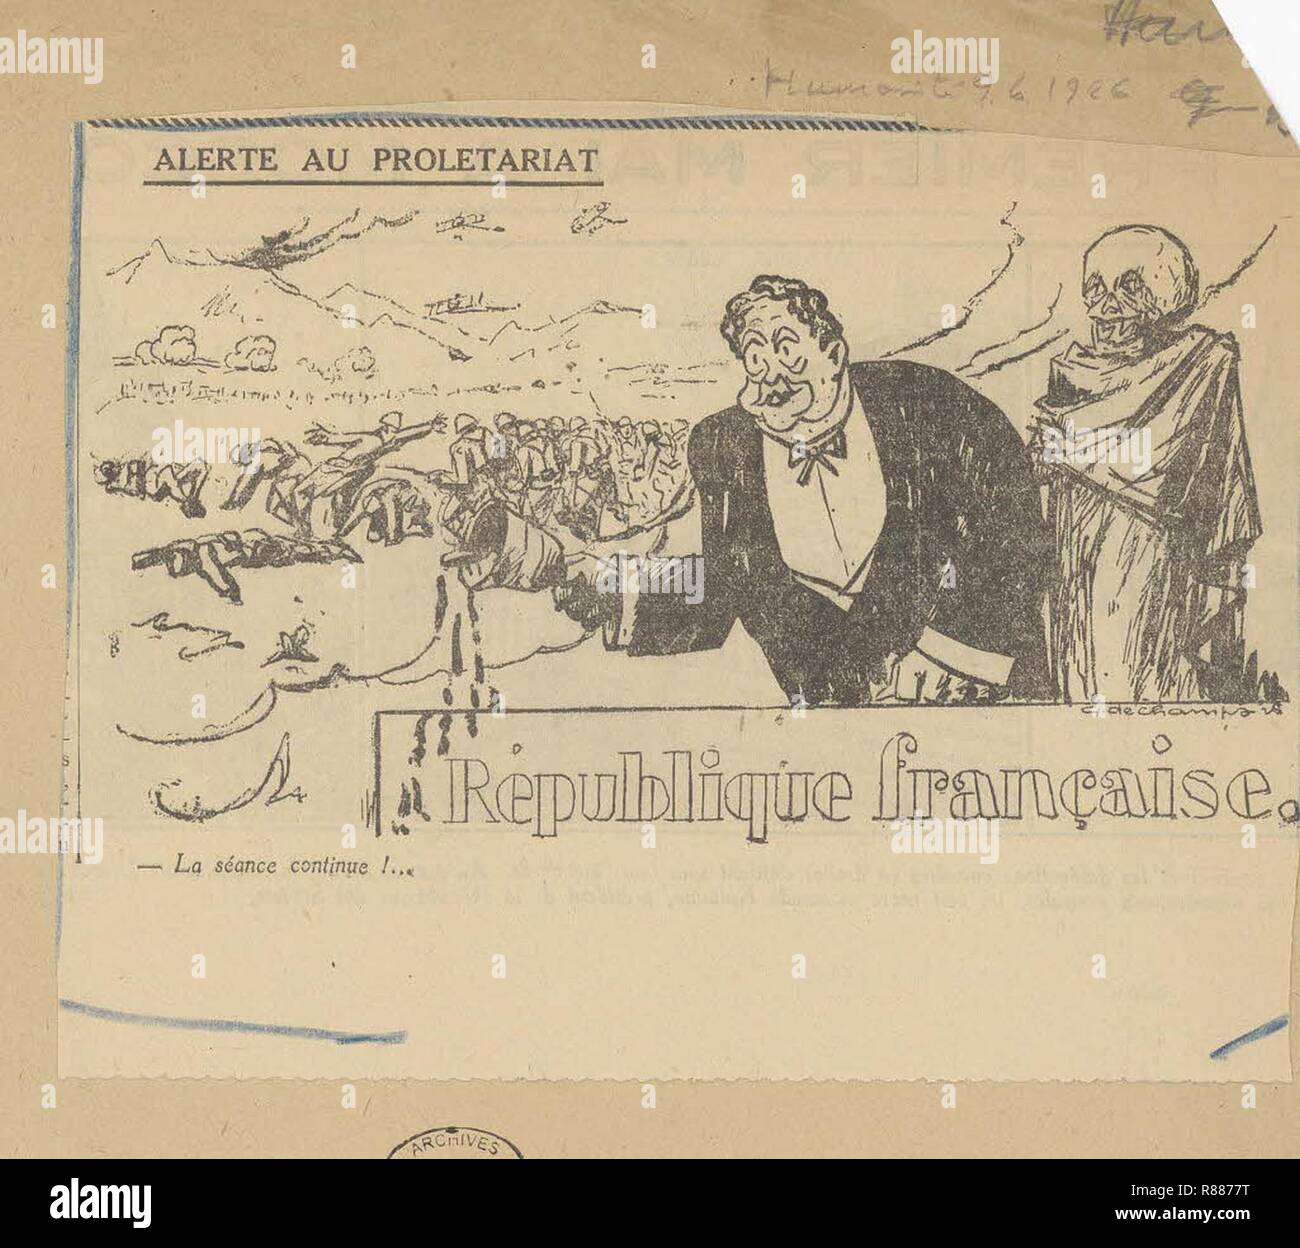 Karikatur von Paul Painlevé, Président du conseil, par laquelle Il est accusé de fabriquer de Faux-Papiers diplomatique-Archives nationales - 313 AP-20-(2). Stockfoto